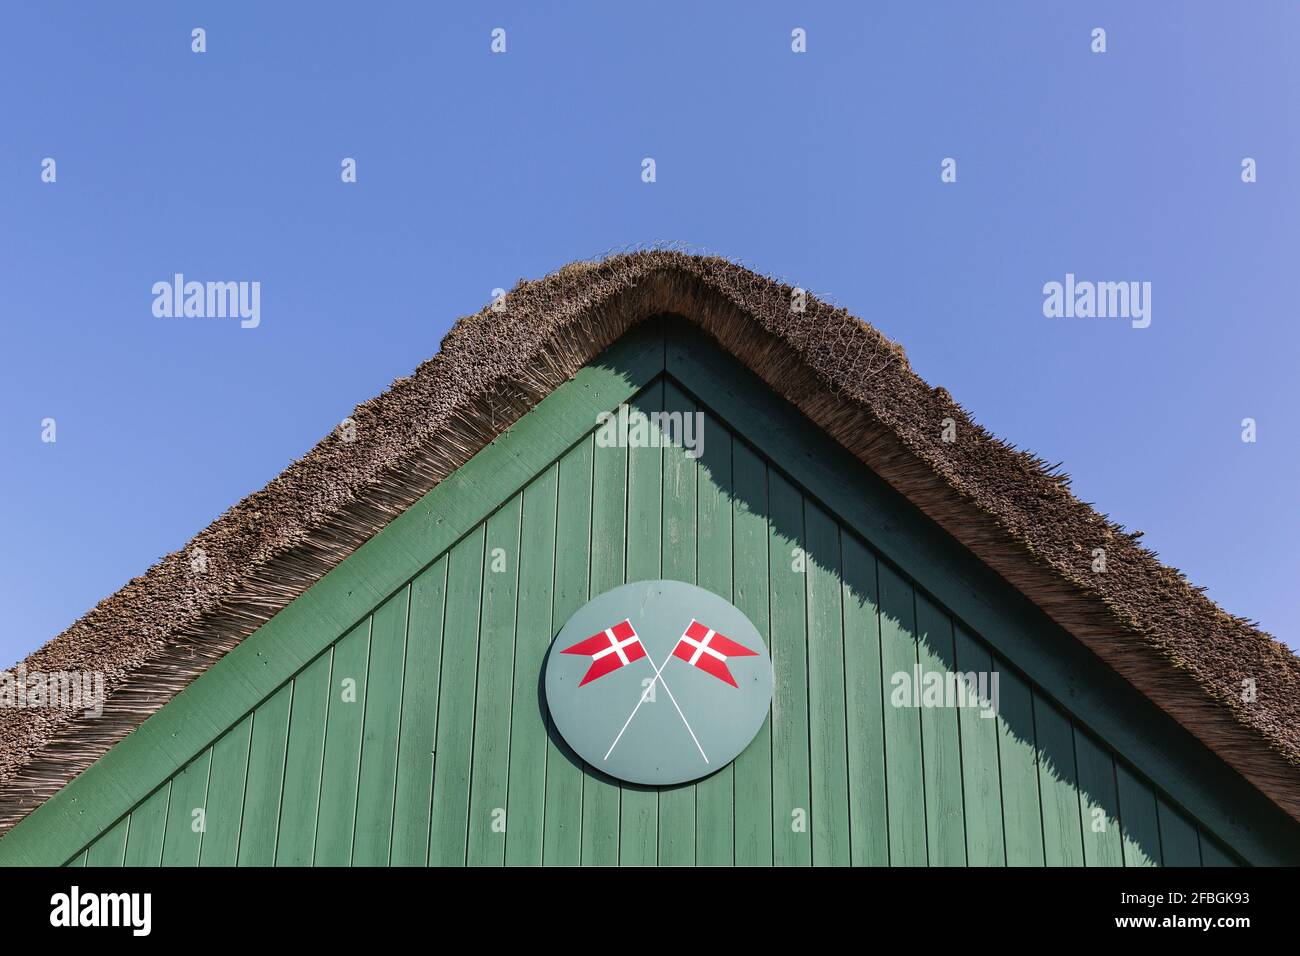 Dinamarca, Romo, banderas danesas pintadas bajo techo de paja de la estación de bomberos Foto de stock